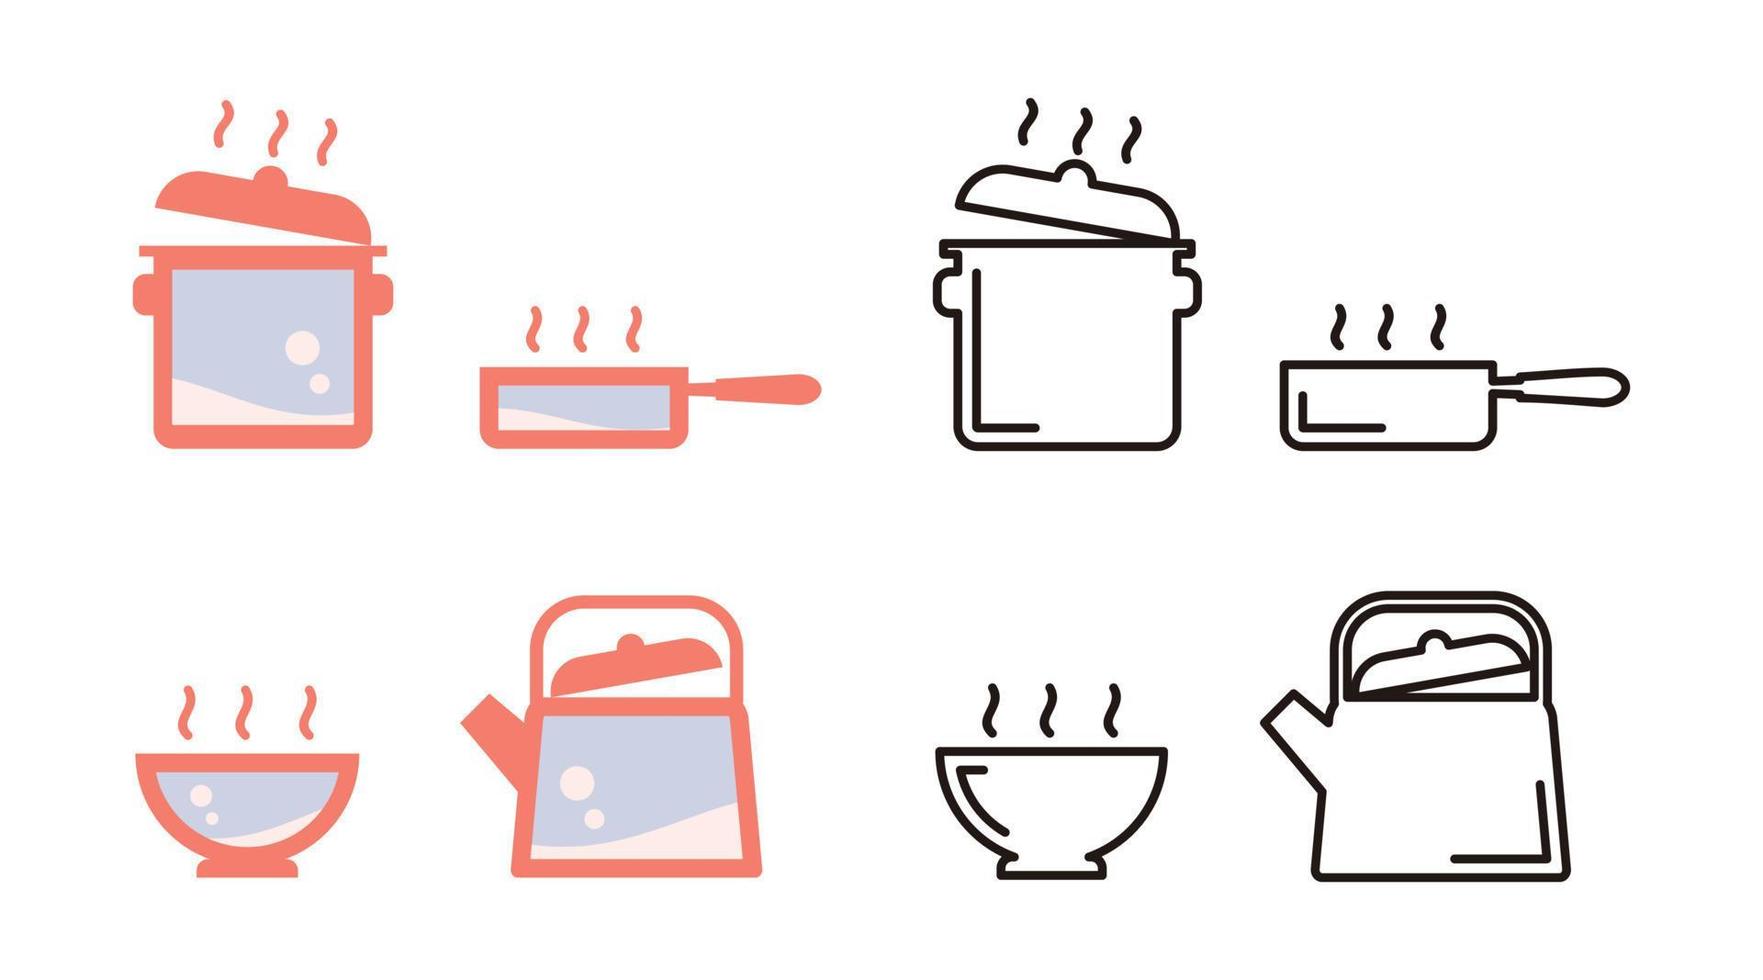 herramientas de cocina o utensilios de cocina conjunto icono, diseño vectorial sobre fondo blanco. vector